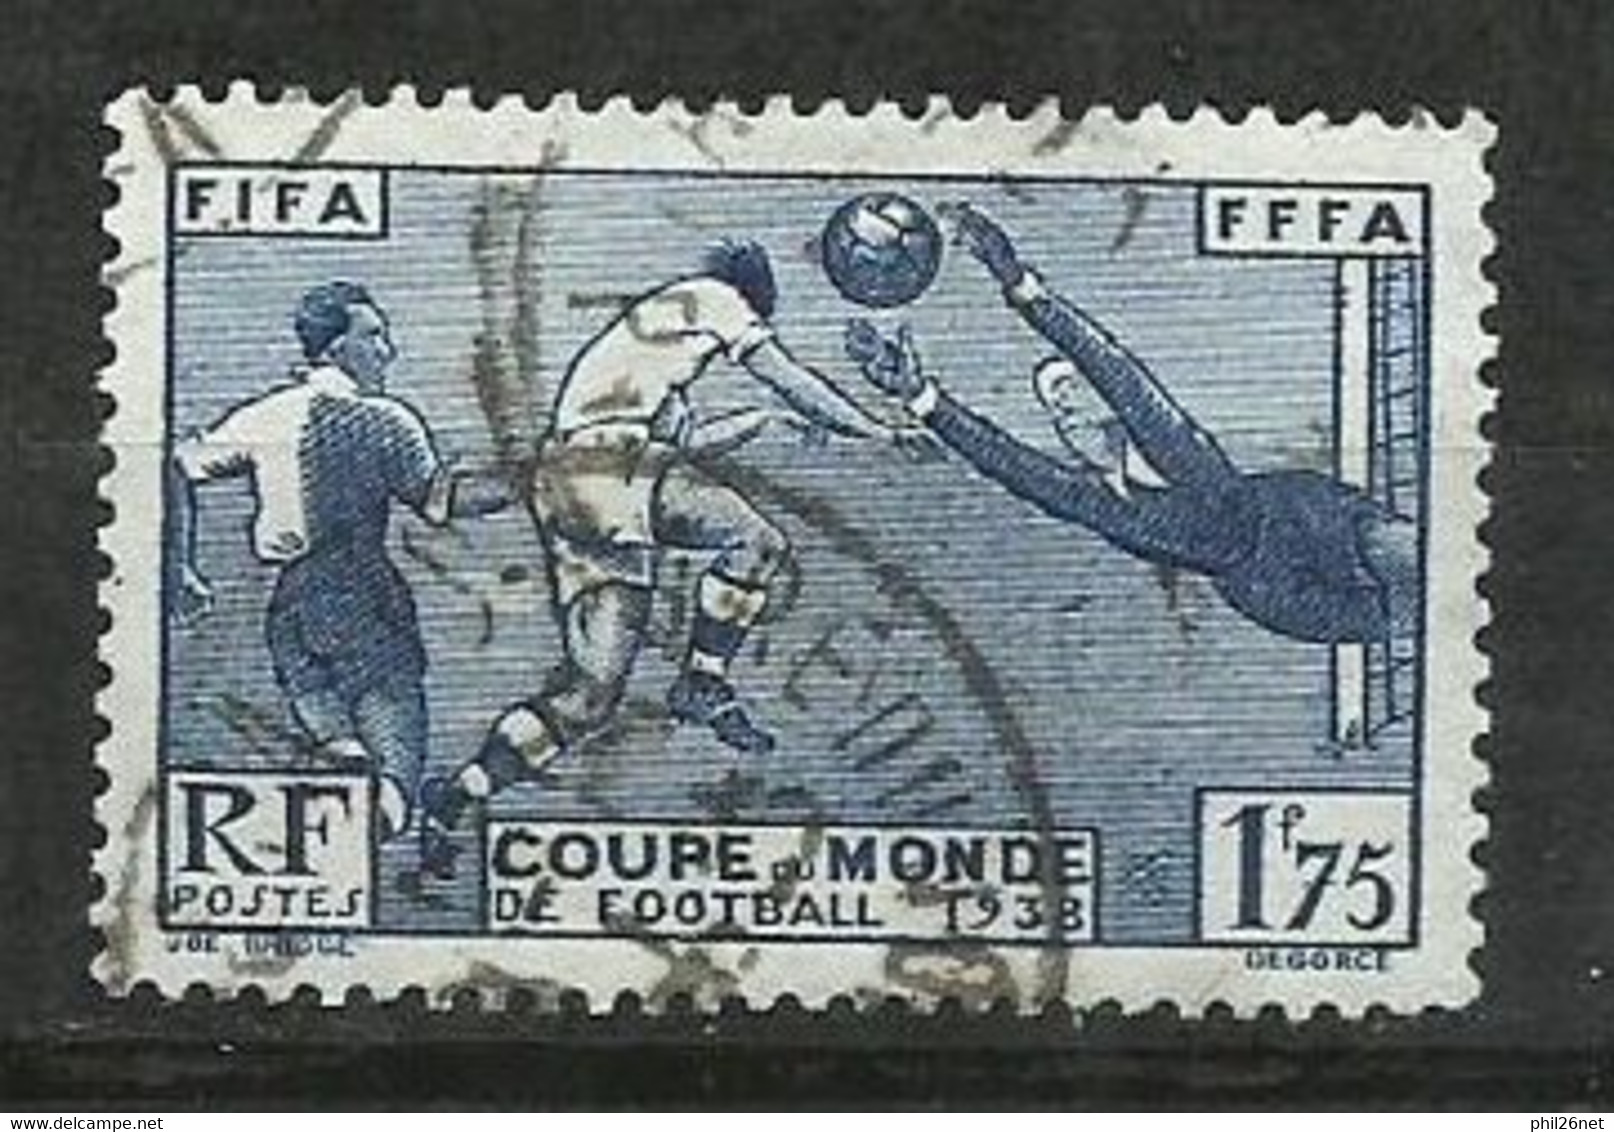 France N° 396  Football Coupe Du Monde Paris  1938    Oblitéré B/T B      Voir Scans      Soldé ! ! ! - 1938 – France